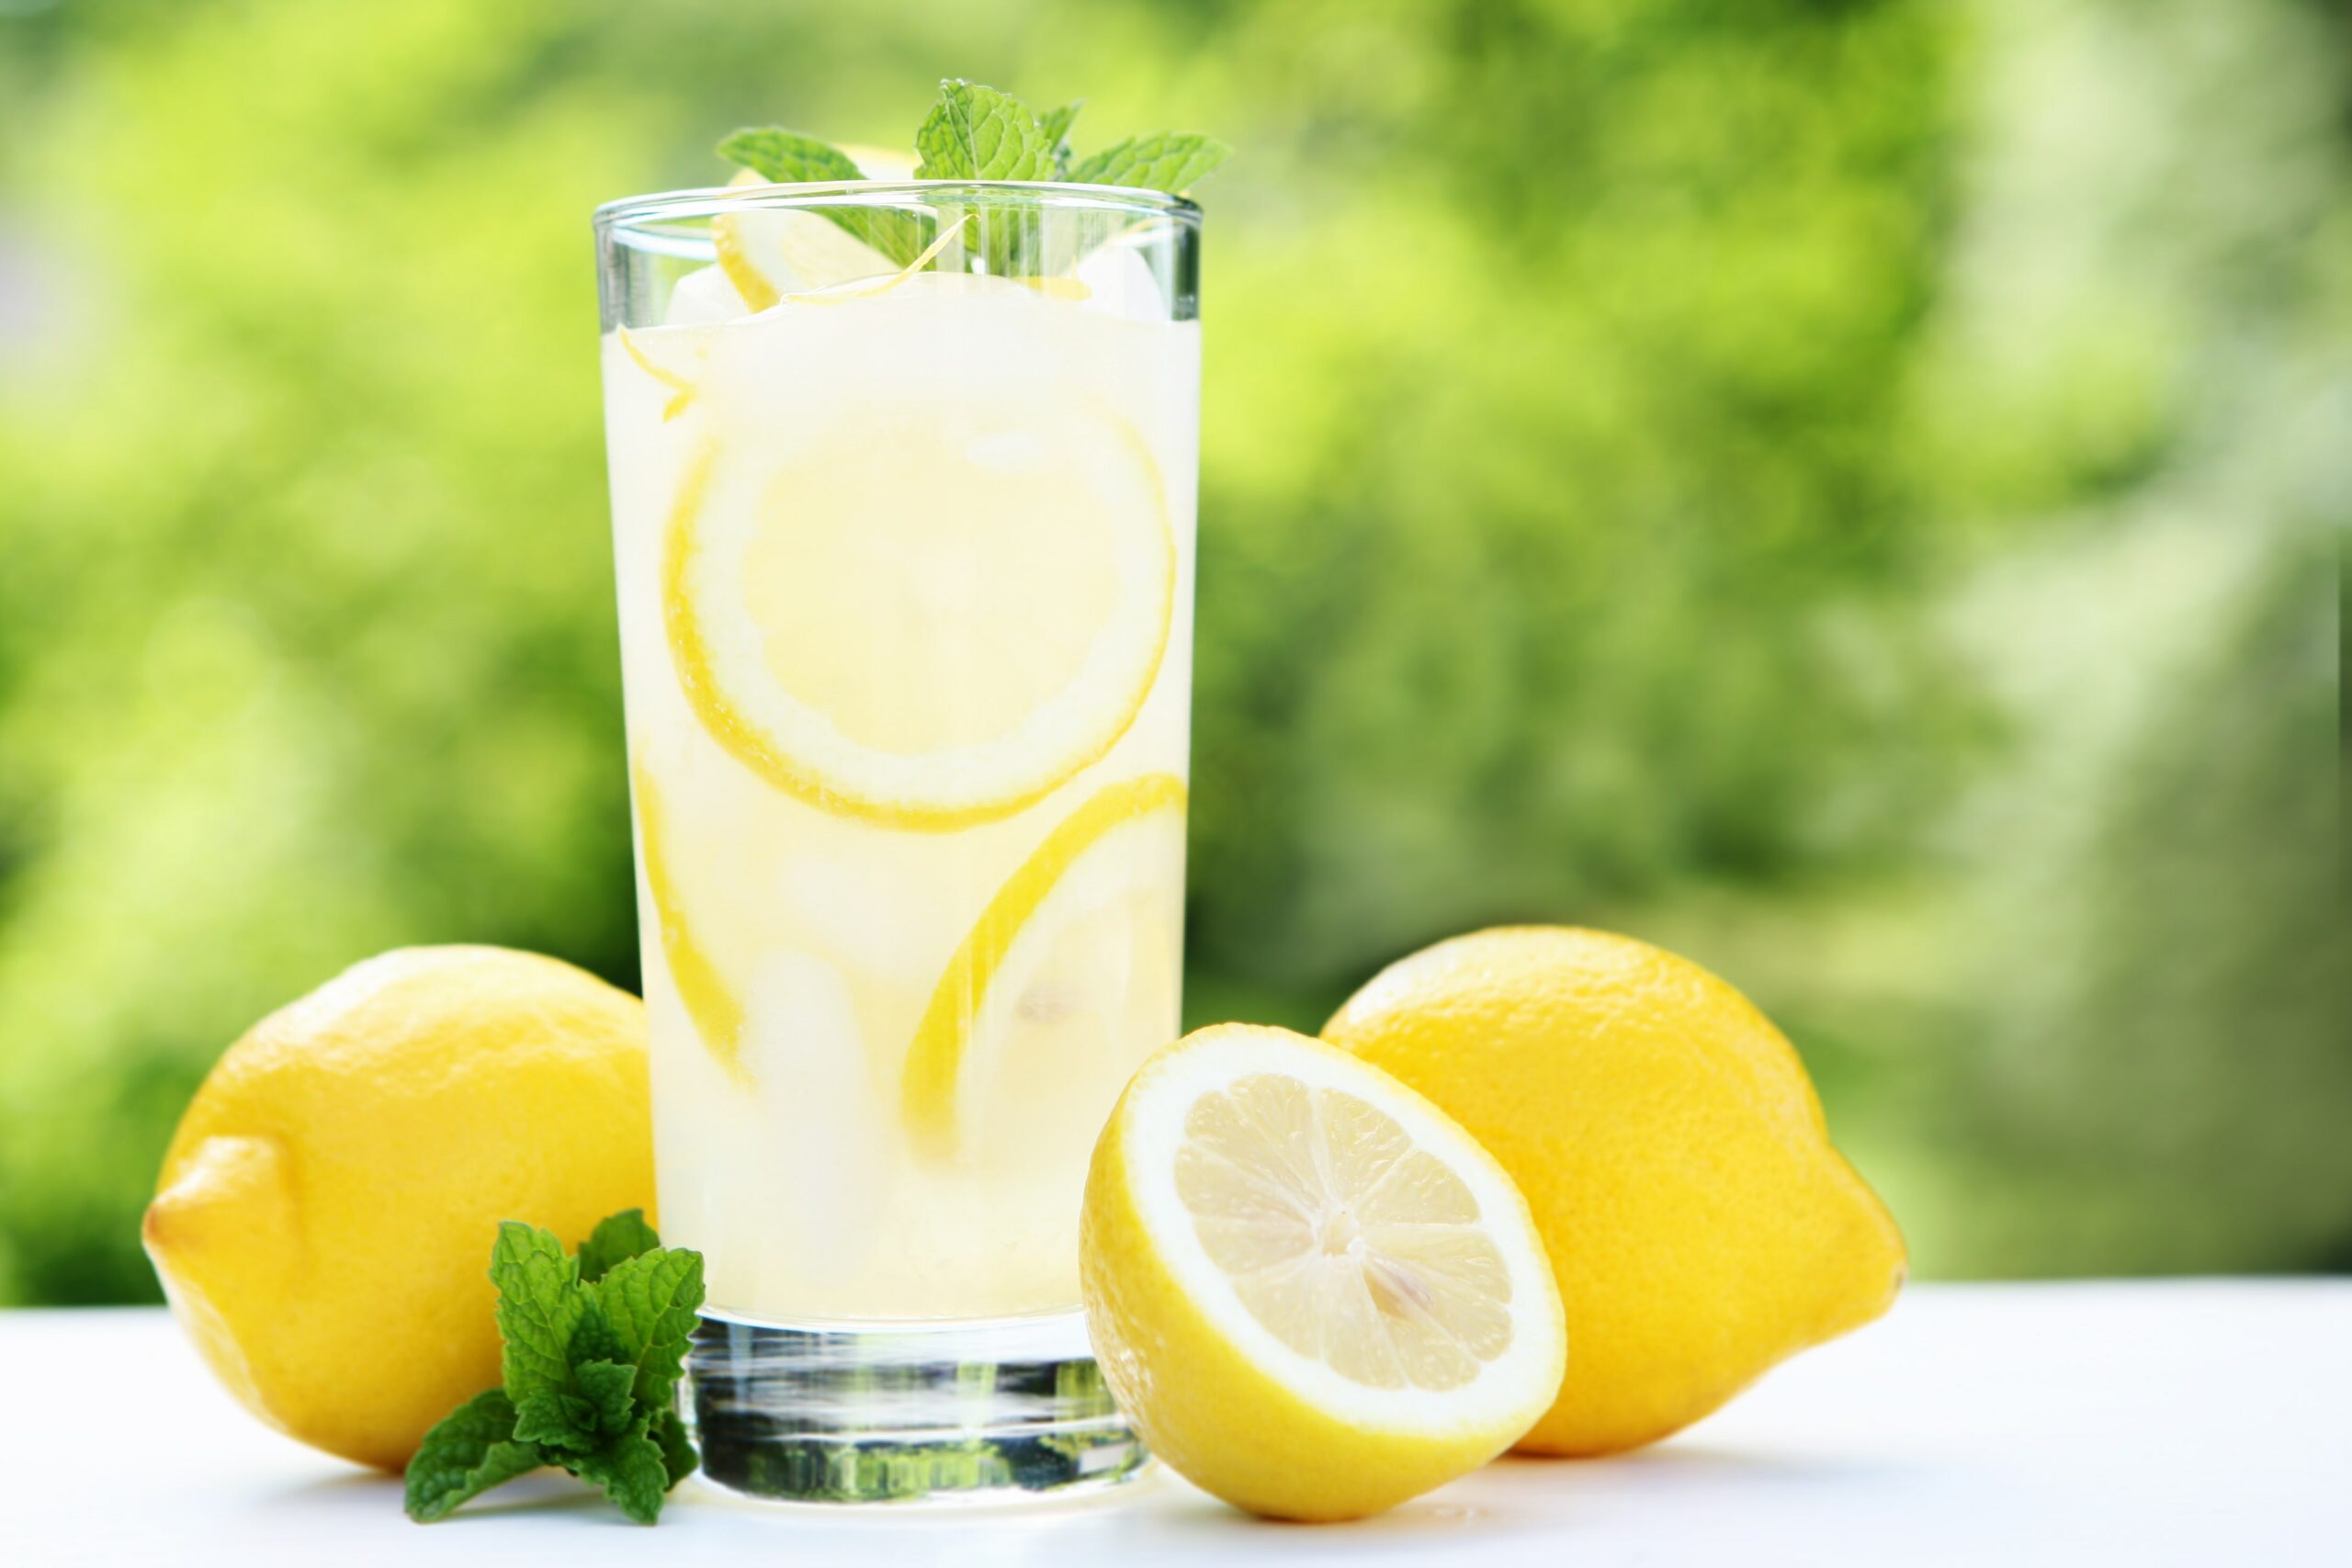 فوائد عصير الليمون على الريق التي لا تعرفها: اشرب كوب واحد يوميًا وهذا ما سيحدث لجسمك بعد 5 أيام